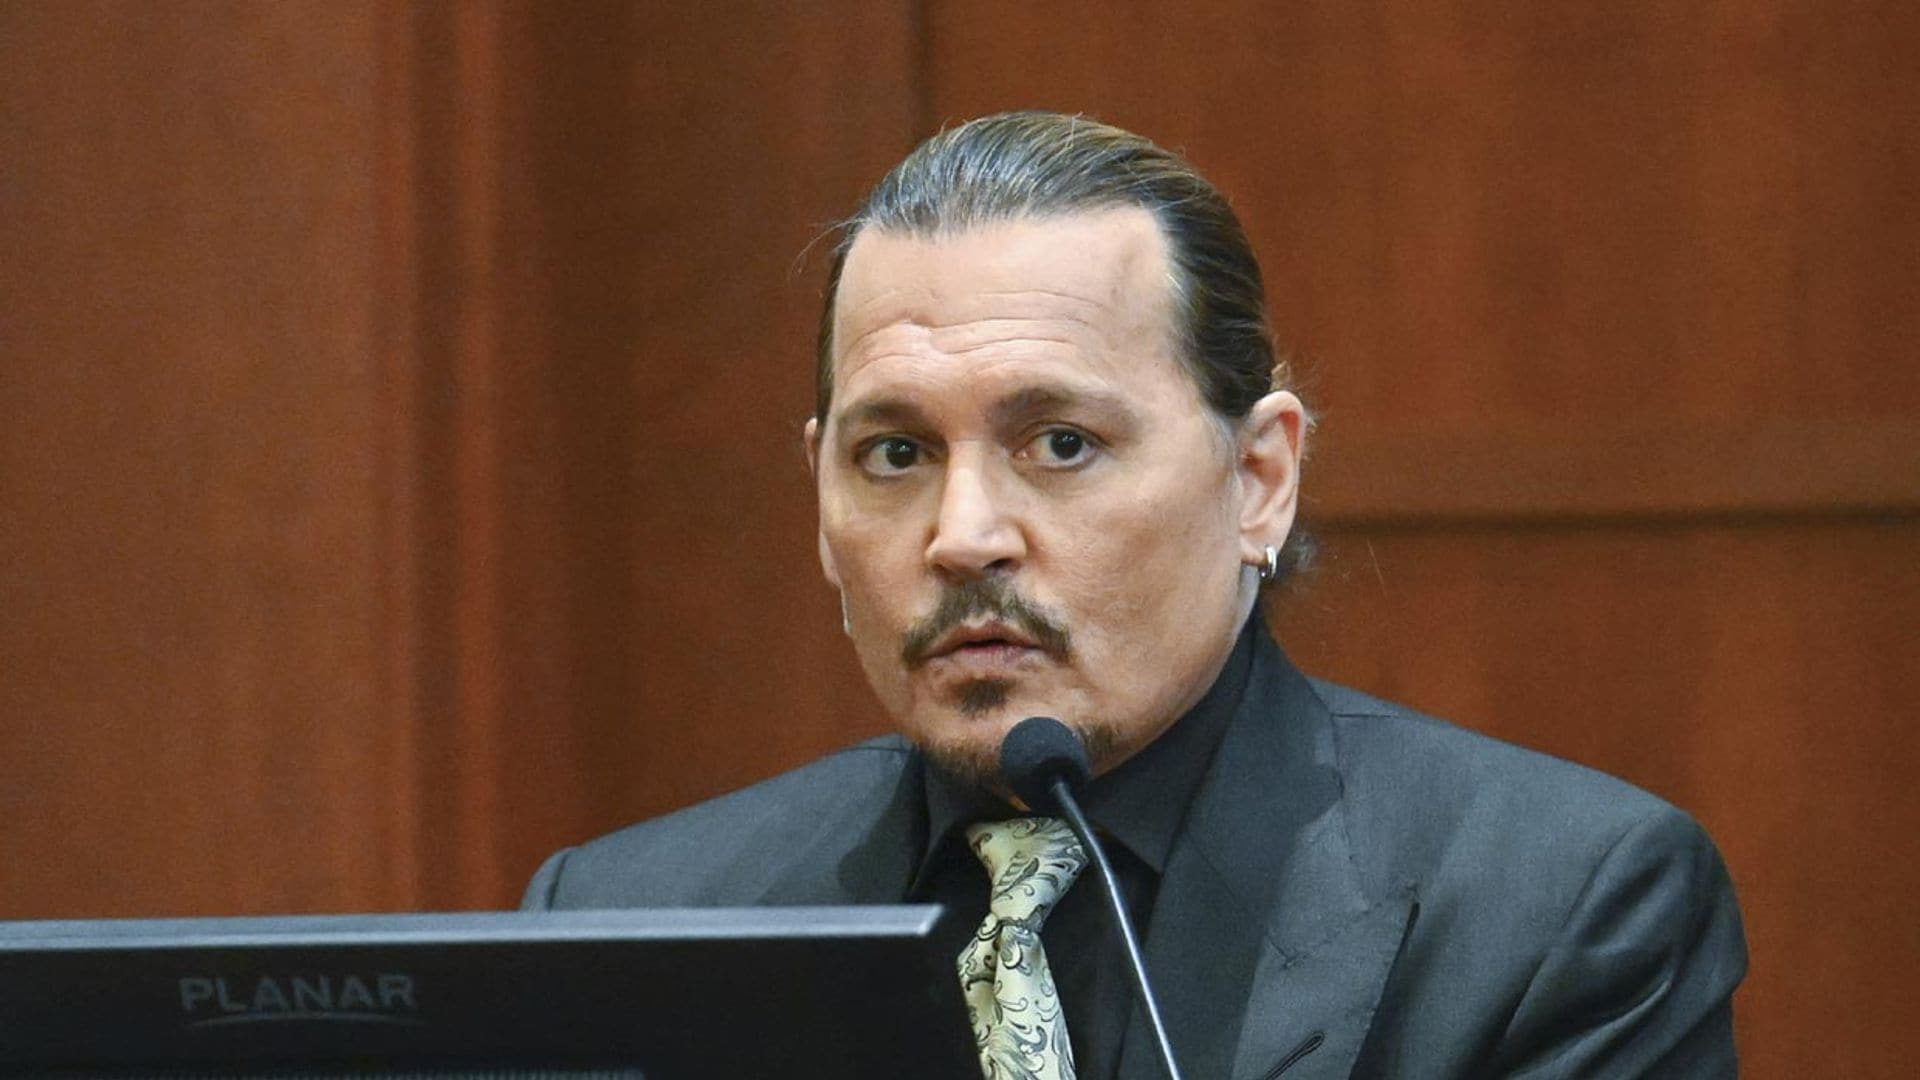 Johnny Depp testifica en el juicio contra Amber Heard: 'Mi objetivo es la verdad'